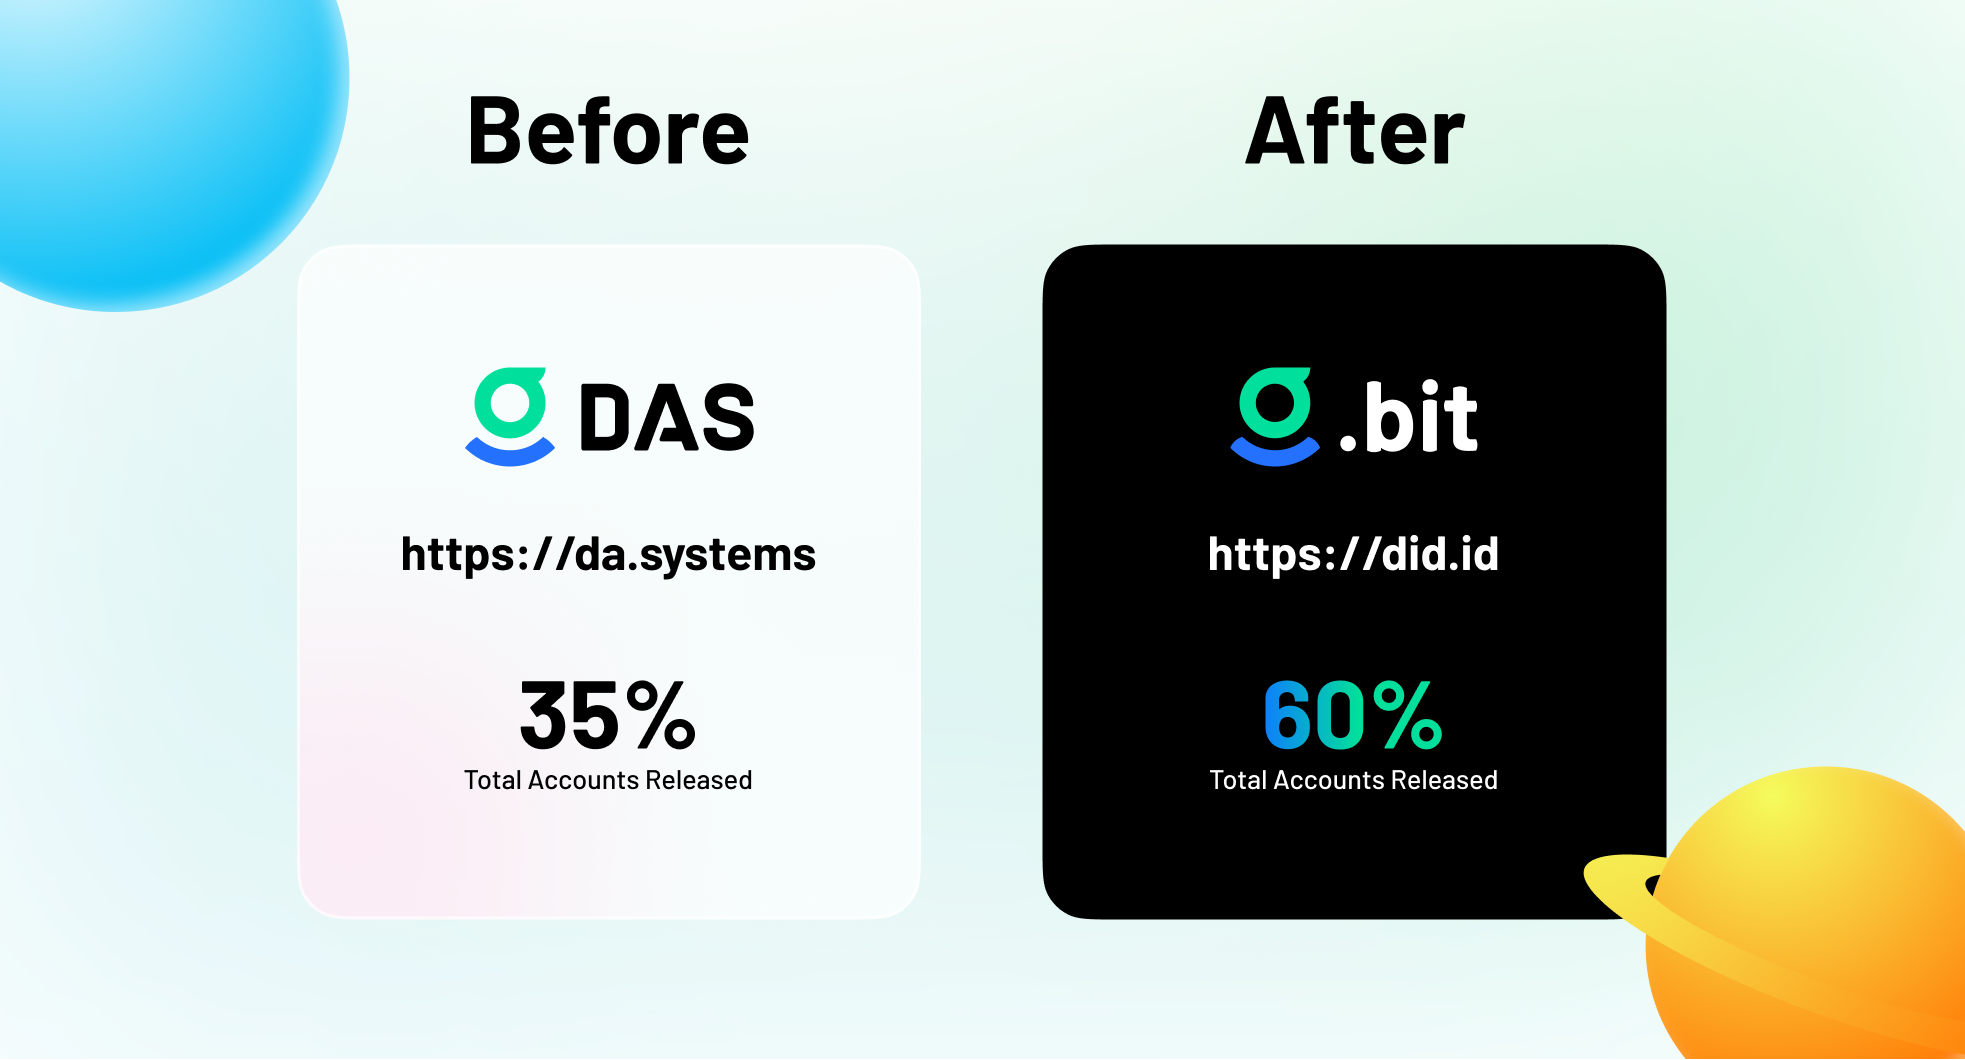 DAS 品牌升级为 .bit，并公布新一轮账户释放计划